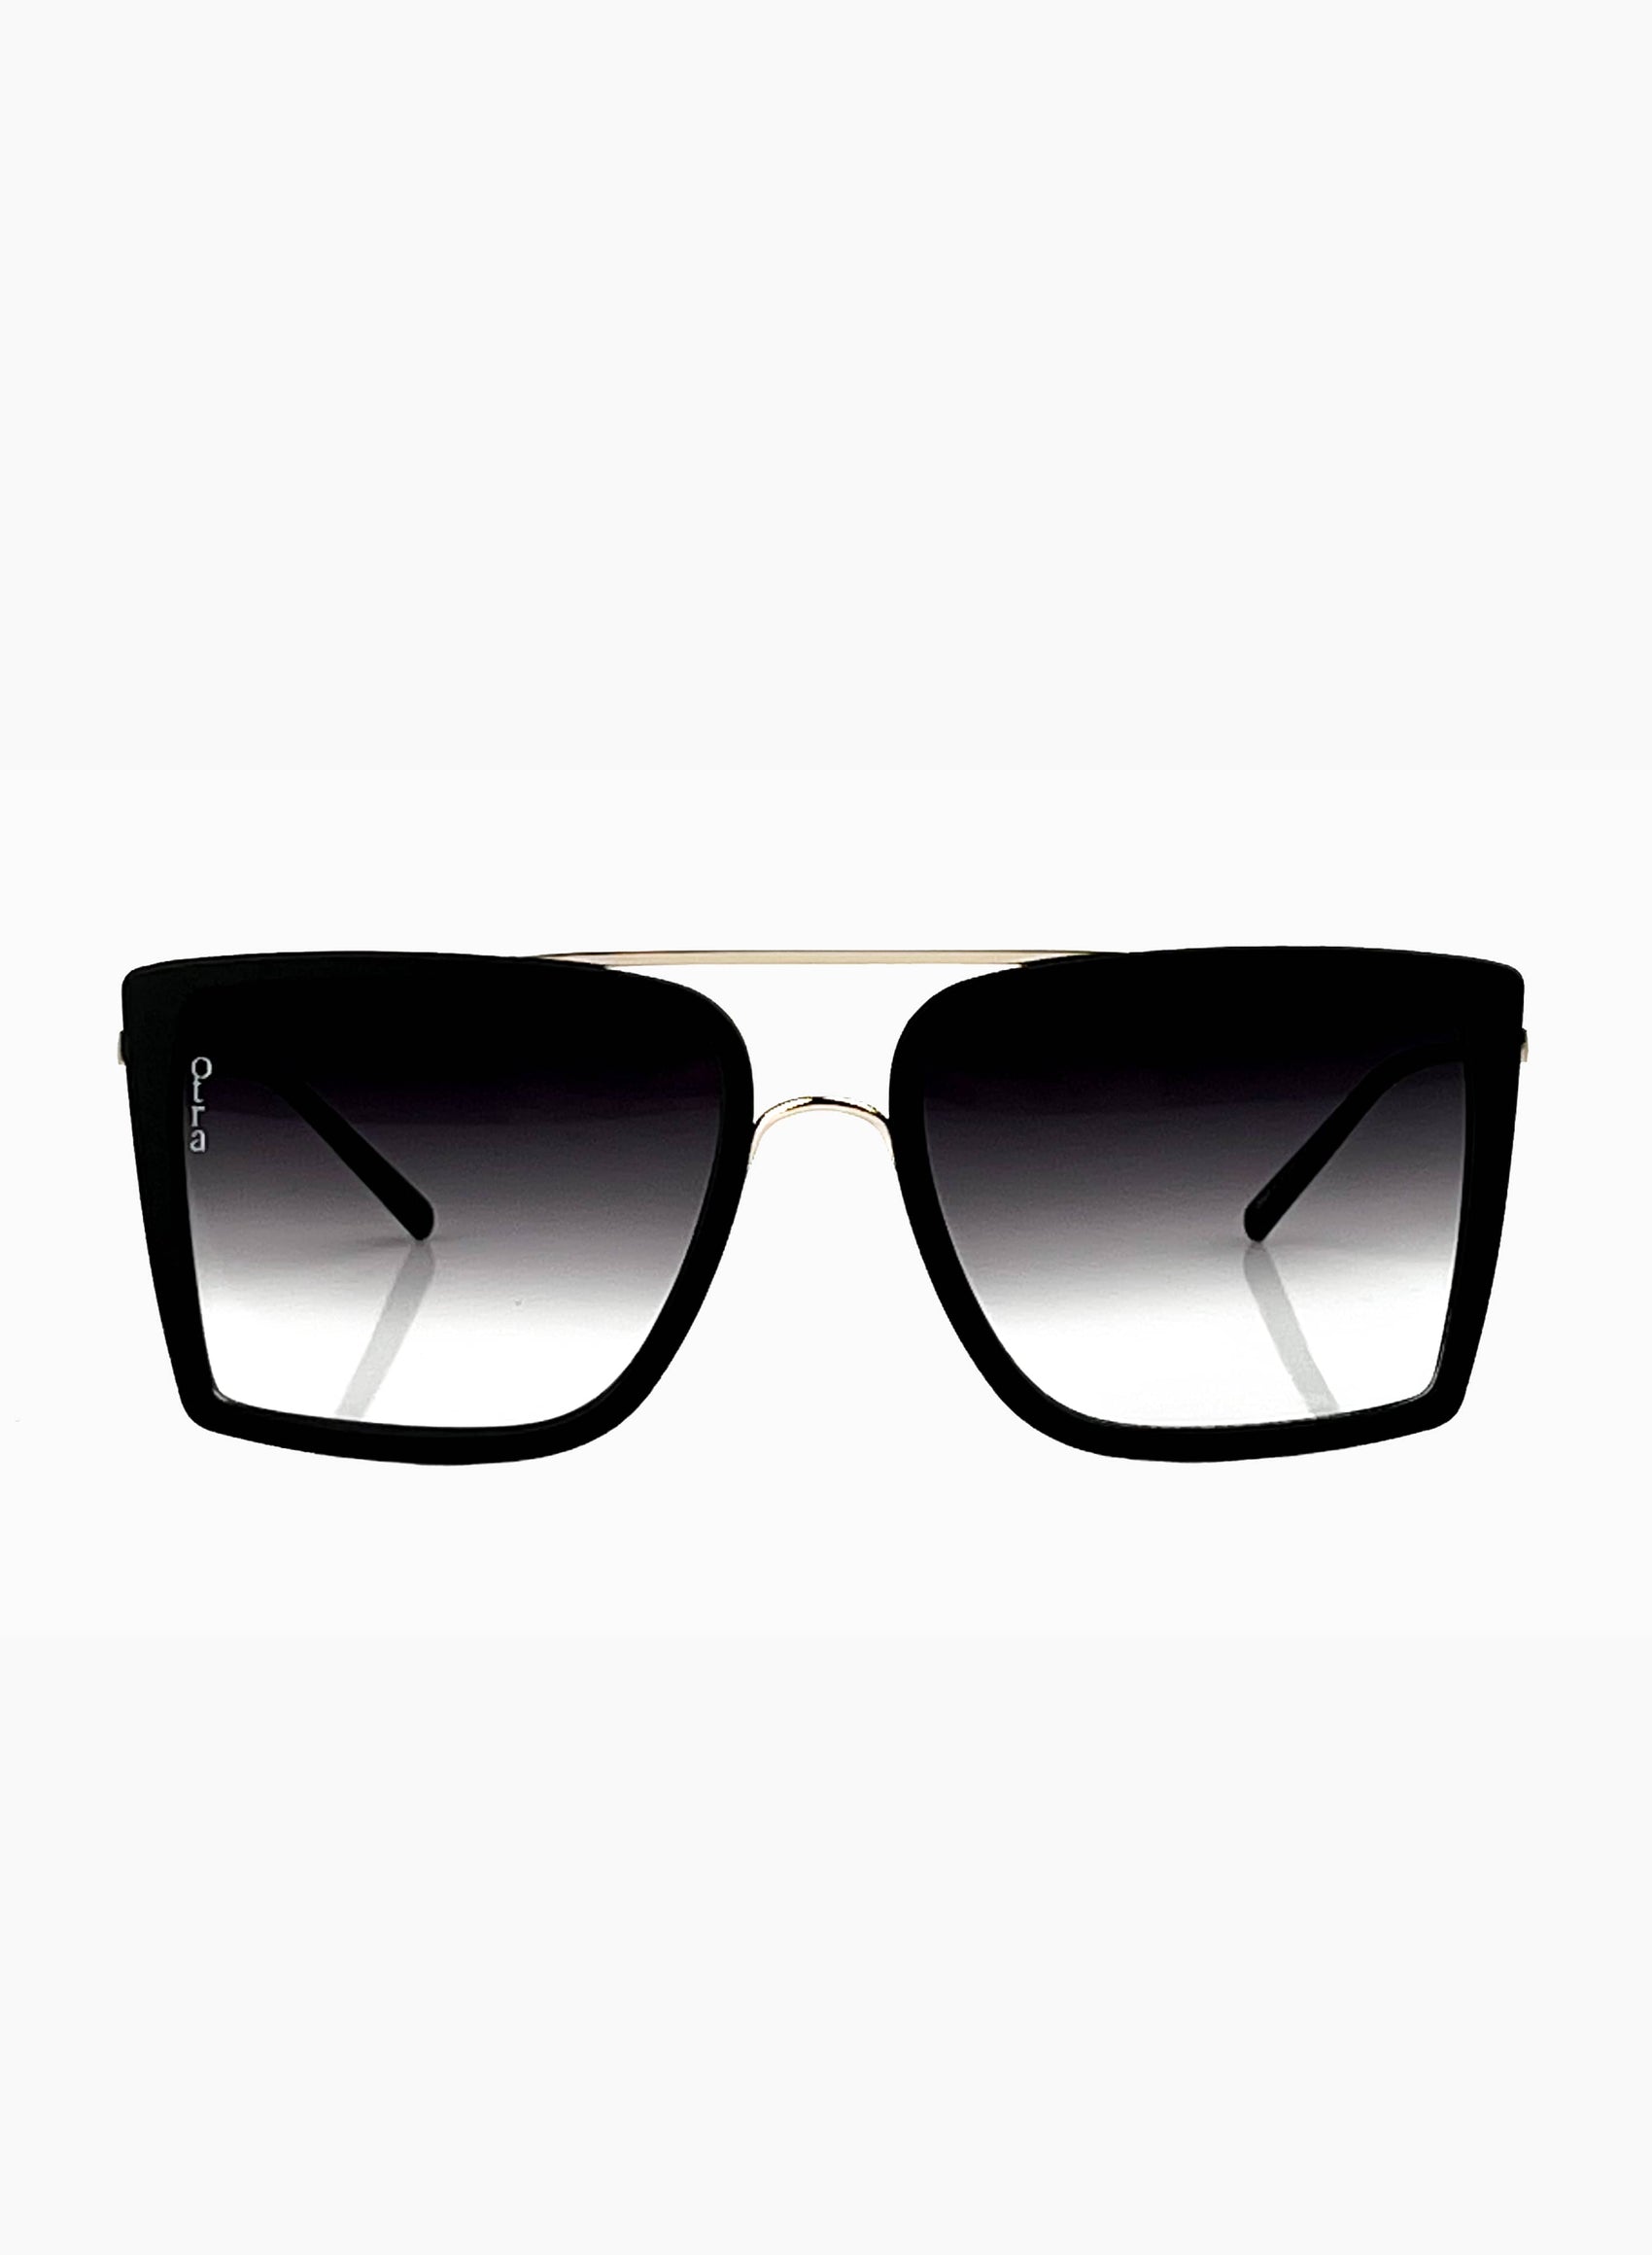 Velda oversized square sunglasses in black